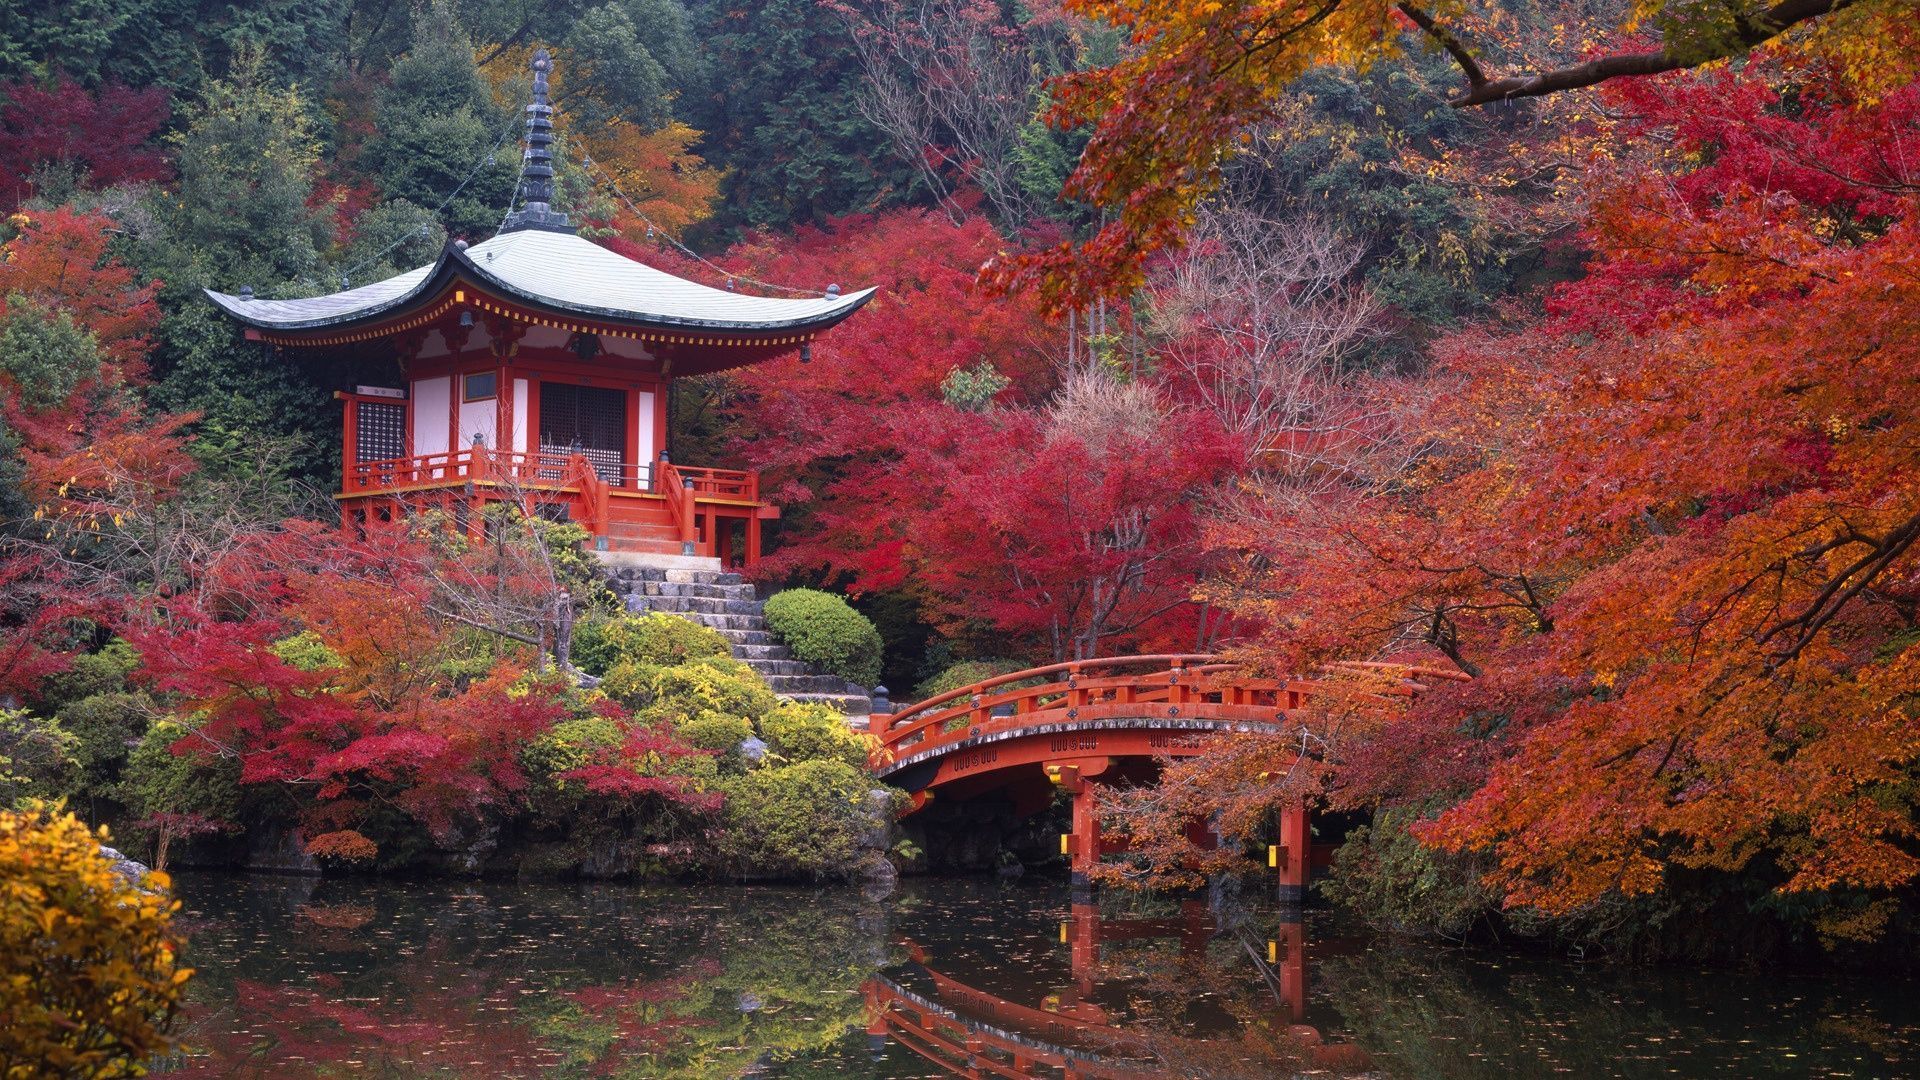 Fondos de paisajes de Japón - Los mejores fondos de paisajes de Japón